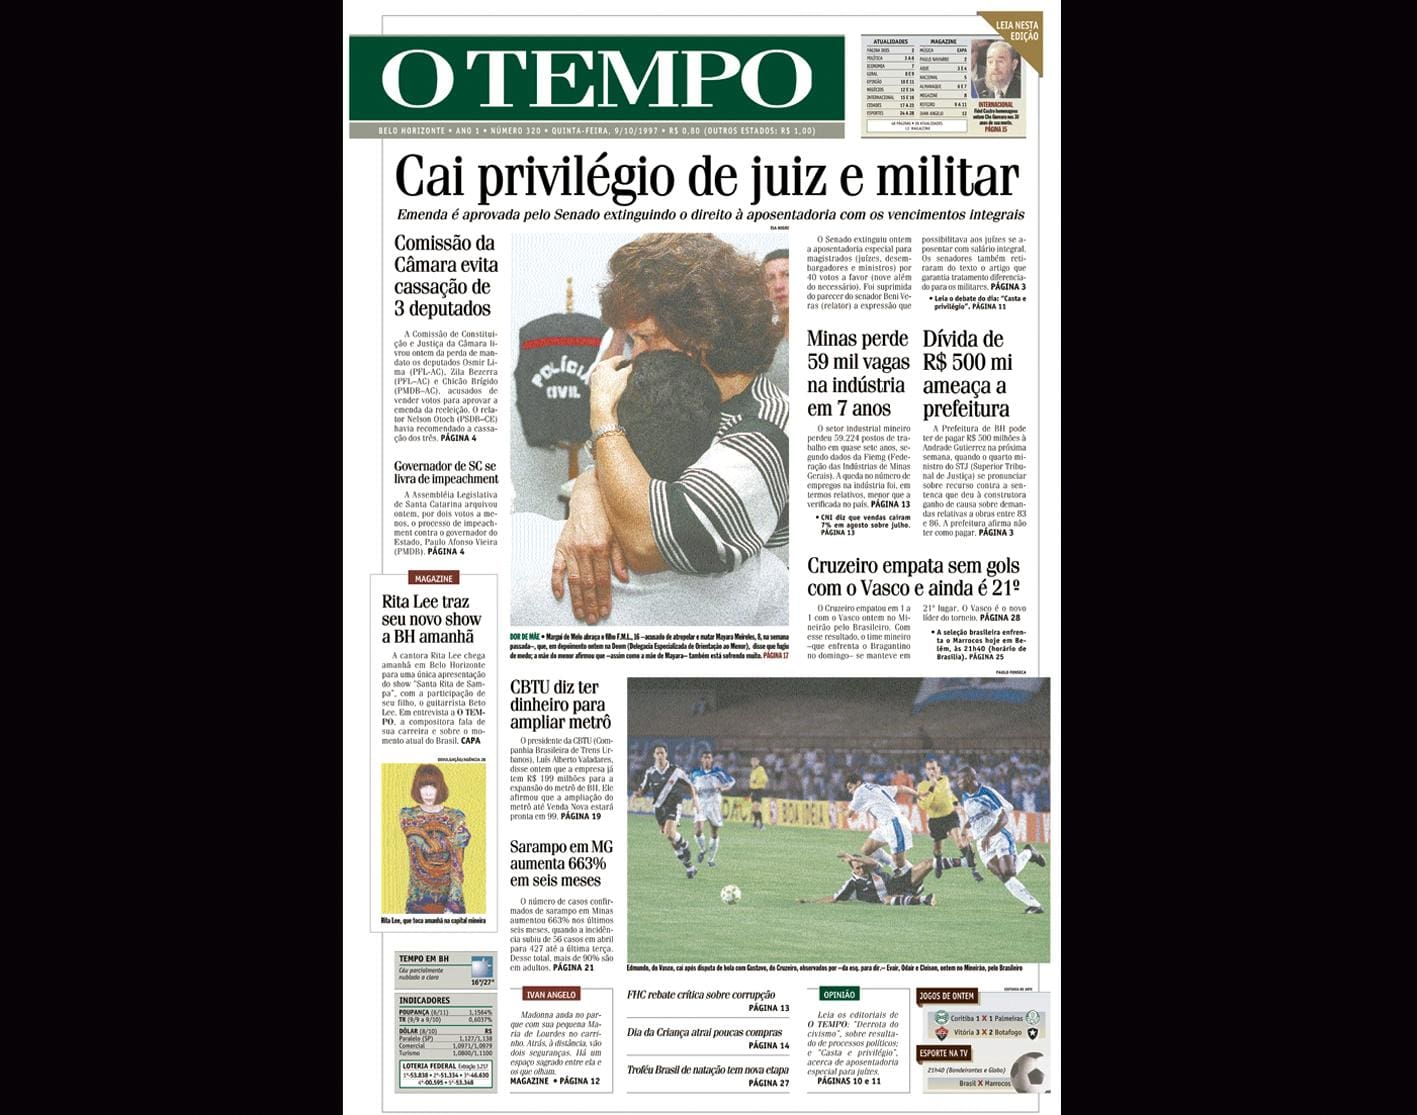 Capa do jornal O TEMPO no dia 9.10.1997; resgate do acervo marca as comemorações dos 25 anos da publicação